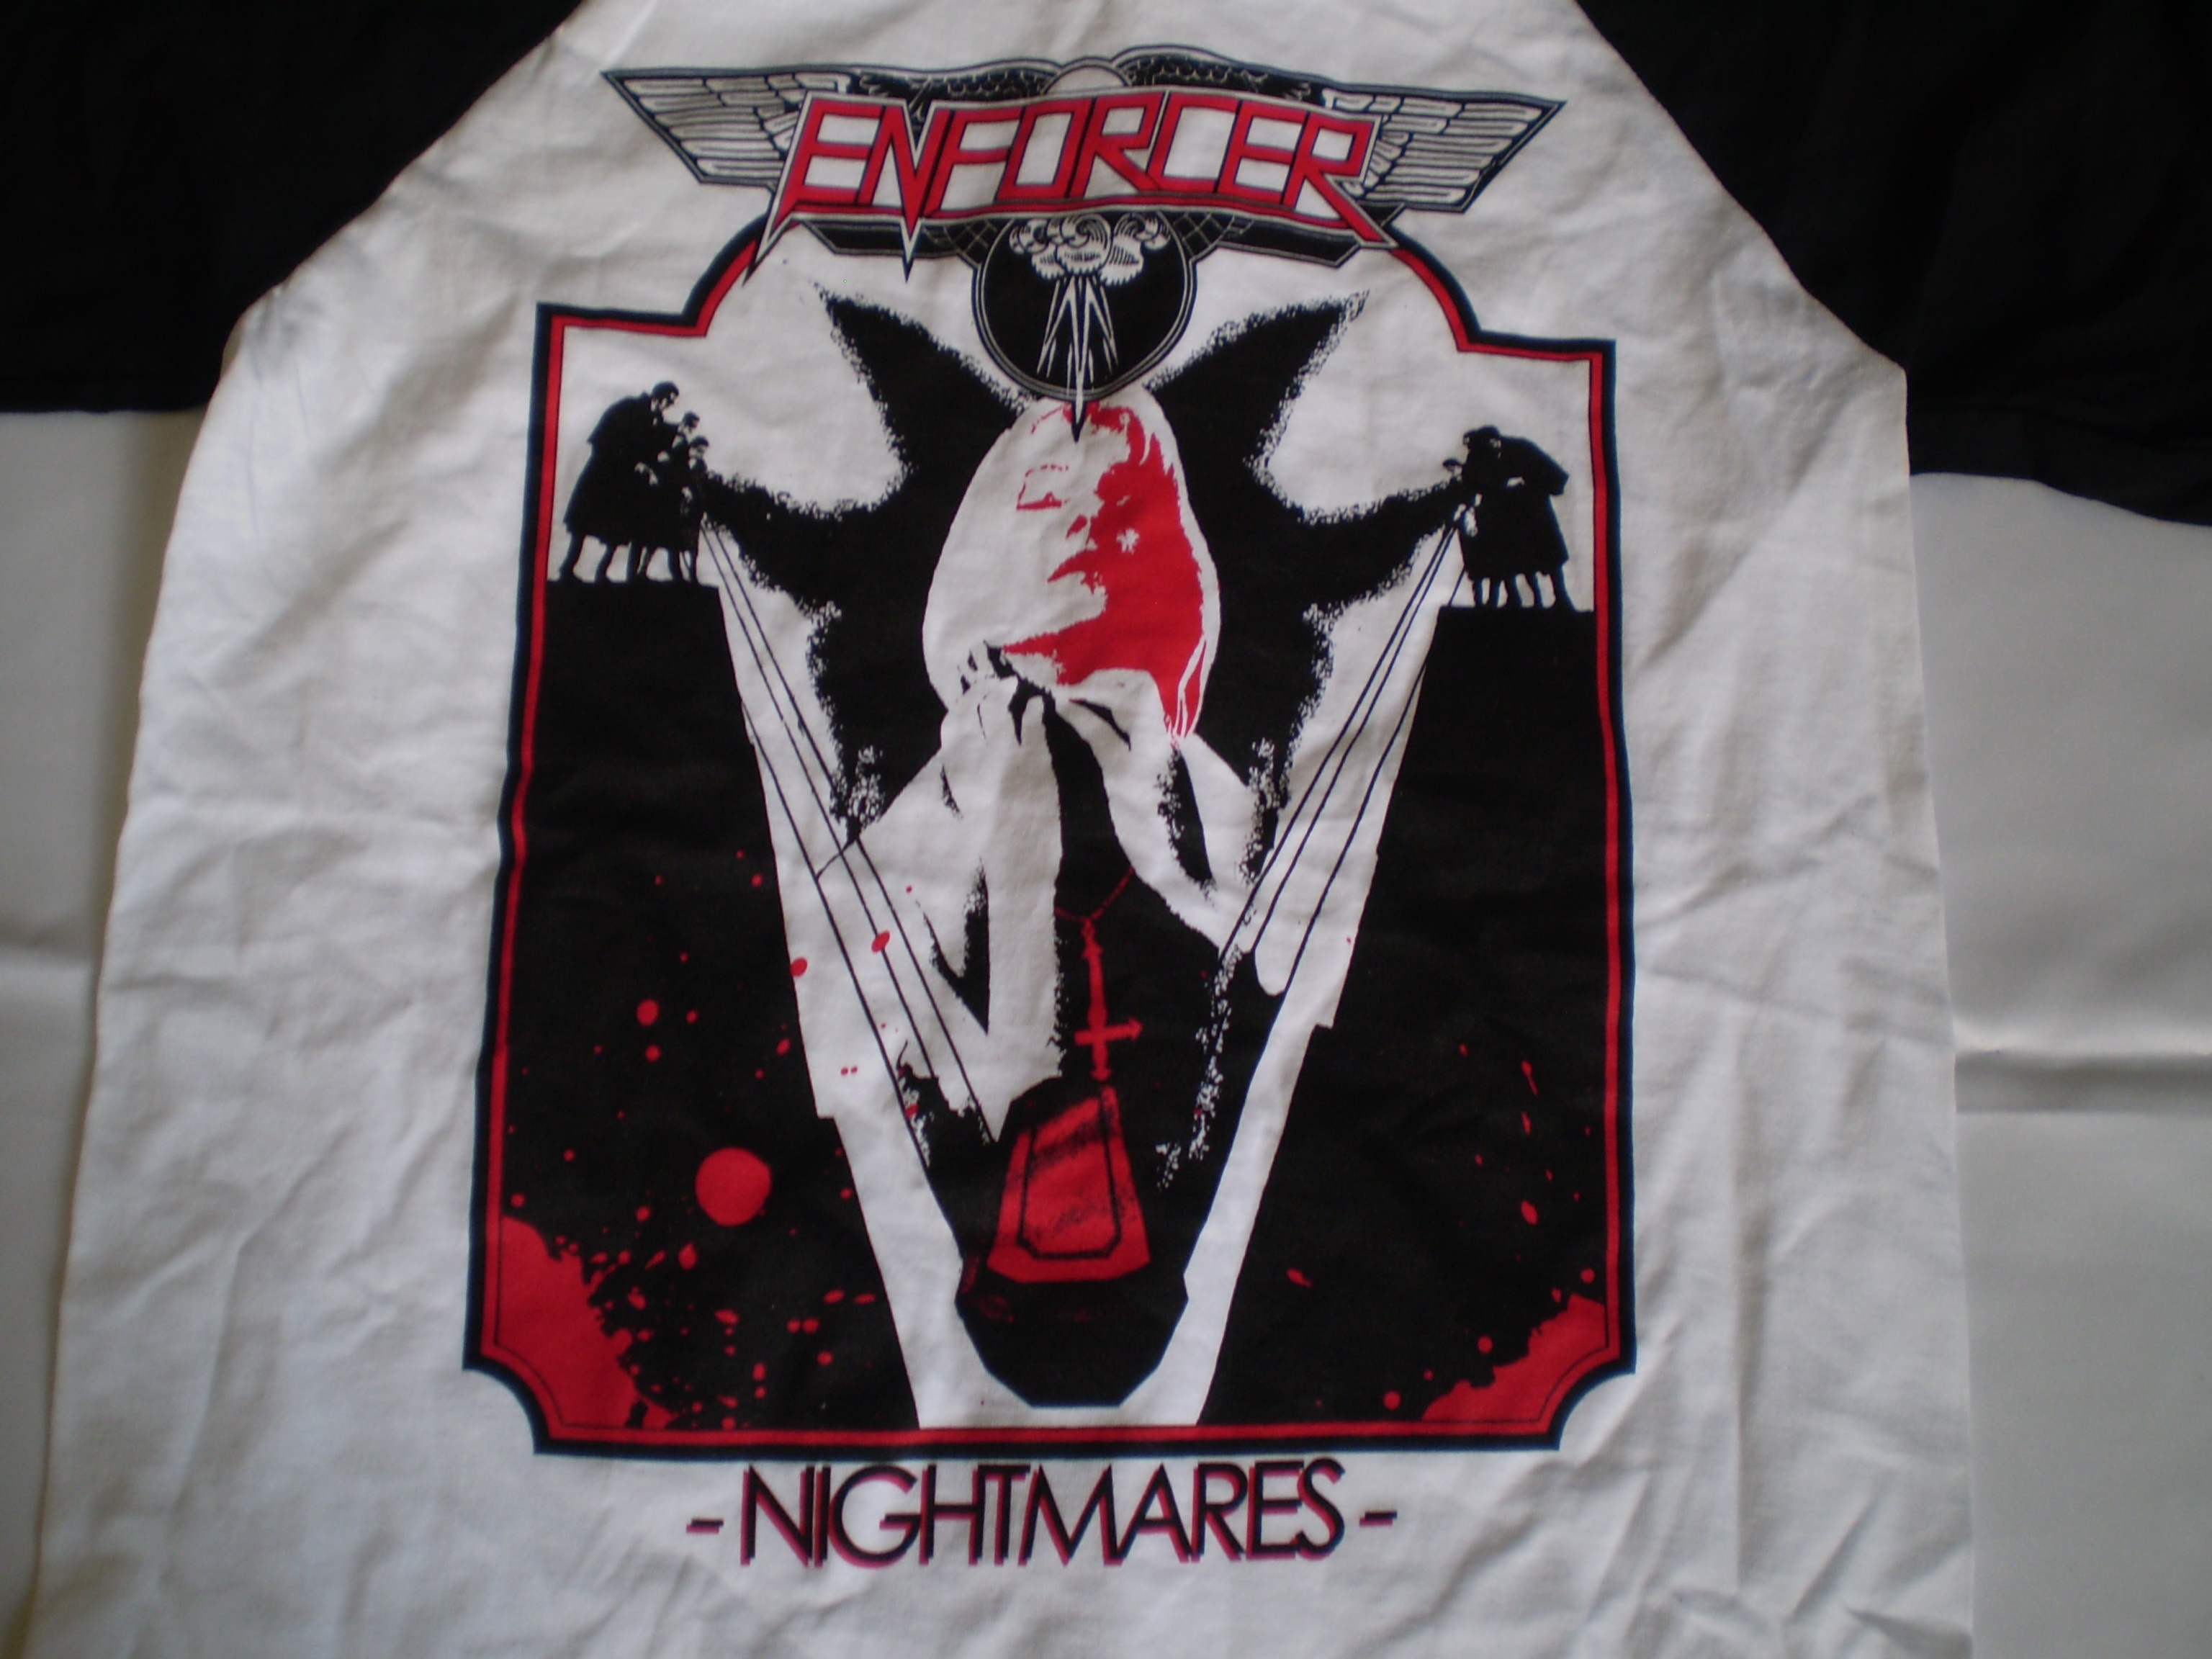 Enforcer - Nightmare Baseball T-Shirt